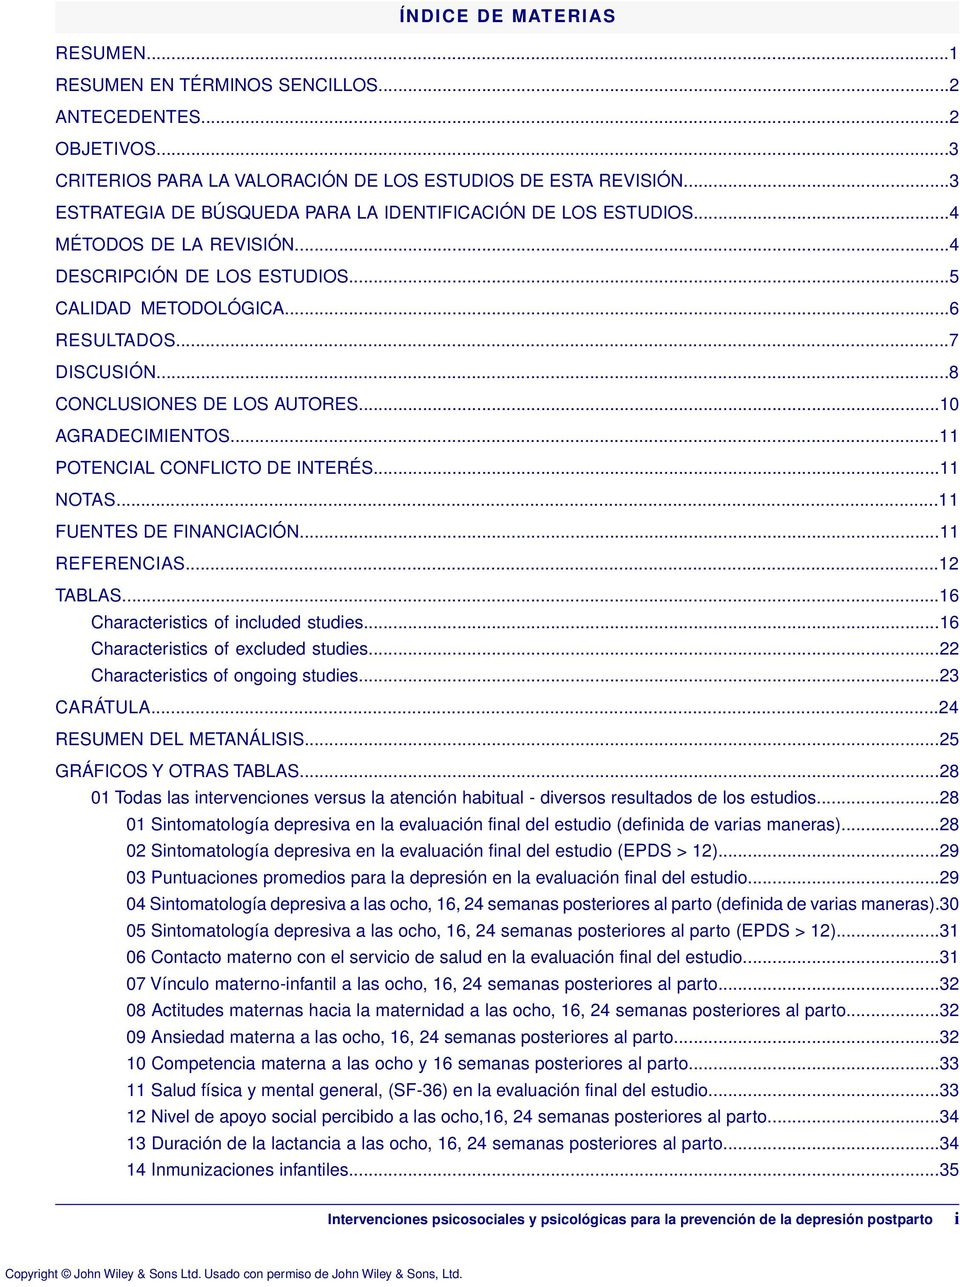 ..8 CONCLUSIONES DE LOS AUTORES...10 AGRADECIMIENTOS...11 POTENCIAL CONFLICTO DE INTERÉS...11 NOTAS...11 FUENTES DE FINANCIACIÓN...11 REFERENCIAS...12 TABLAS...16 Characteristics of included studies.